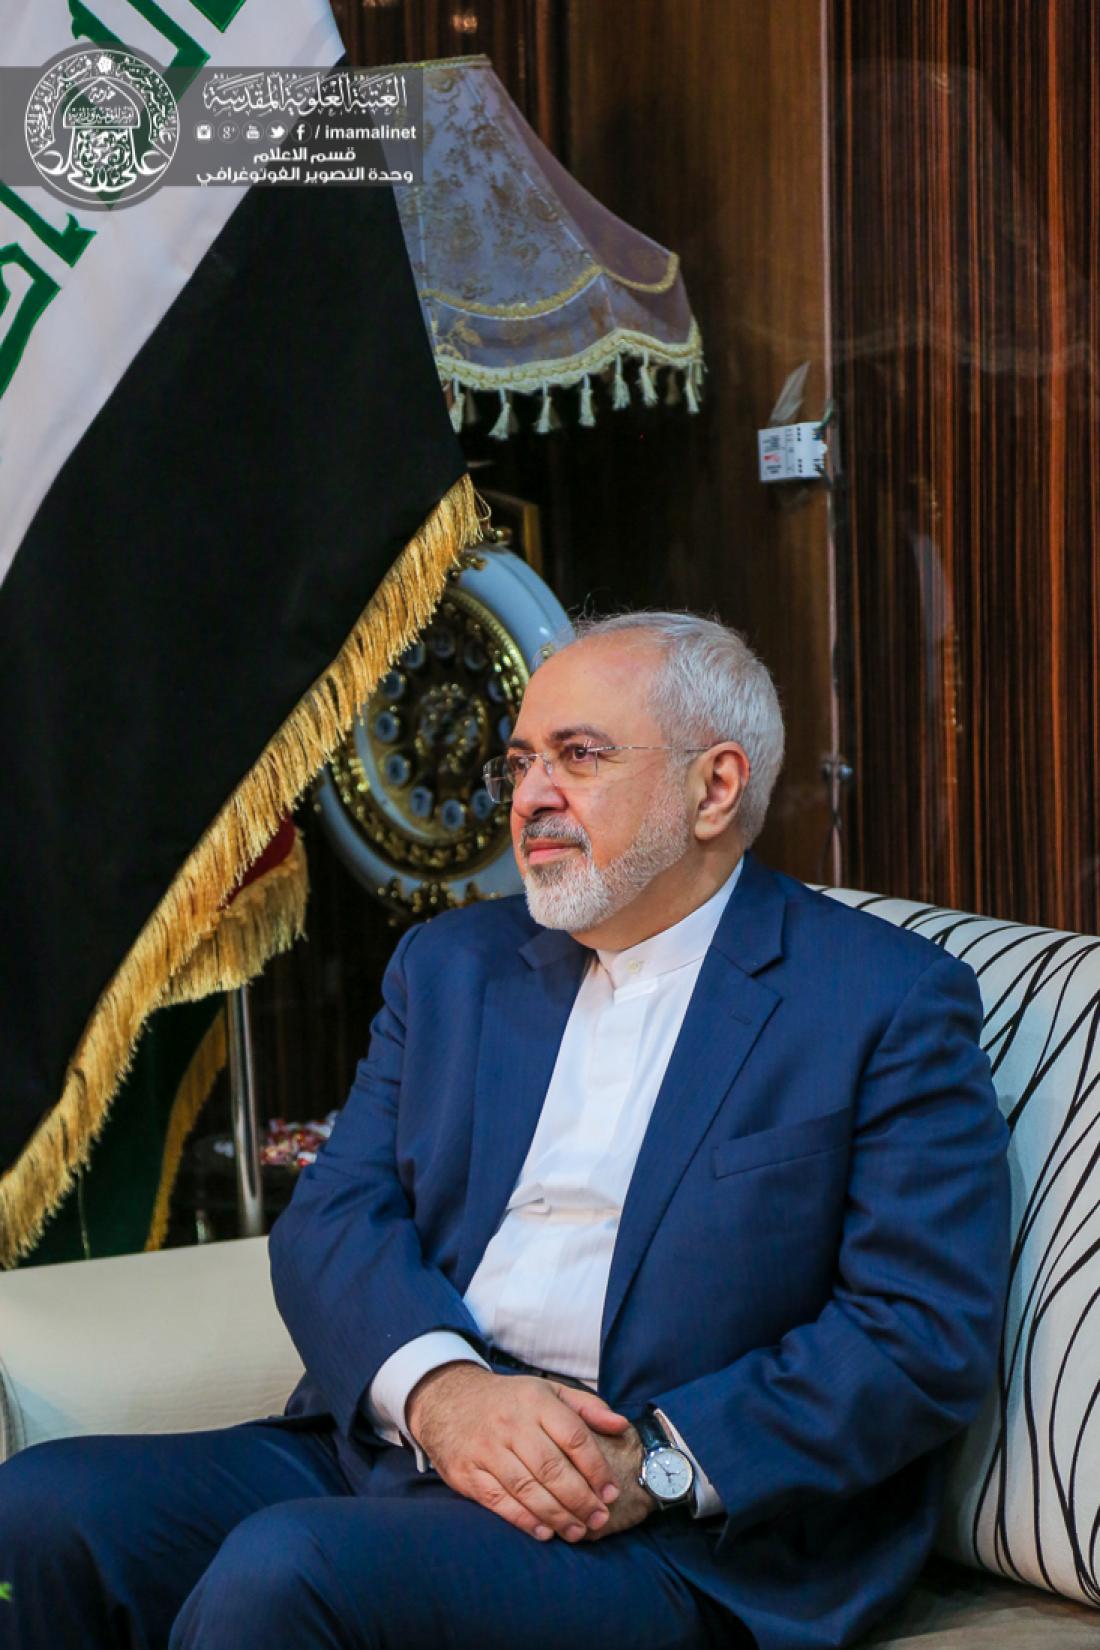 تقرير مصور : وزير الخارجية الايراني محمد جواد ظريف يتشرف بزيارة العتبة العلوية المقدسة  | 